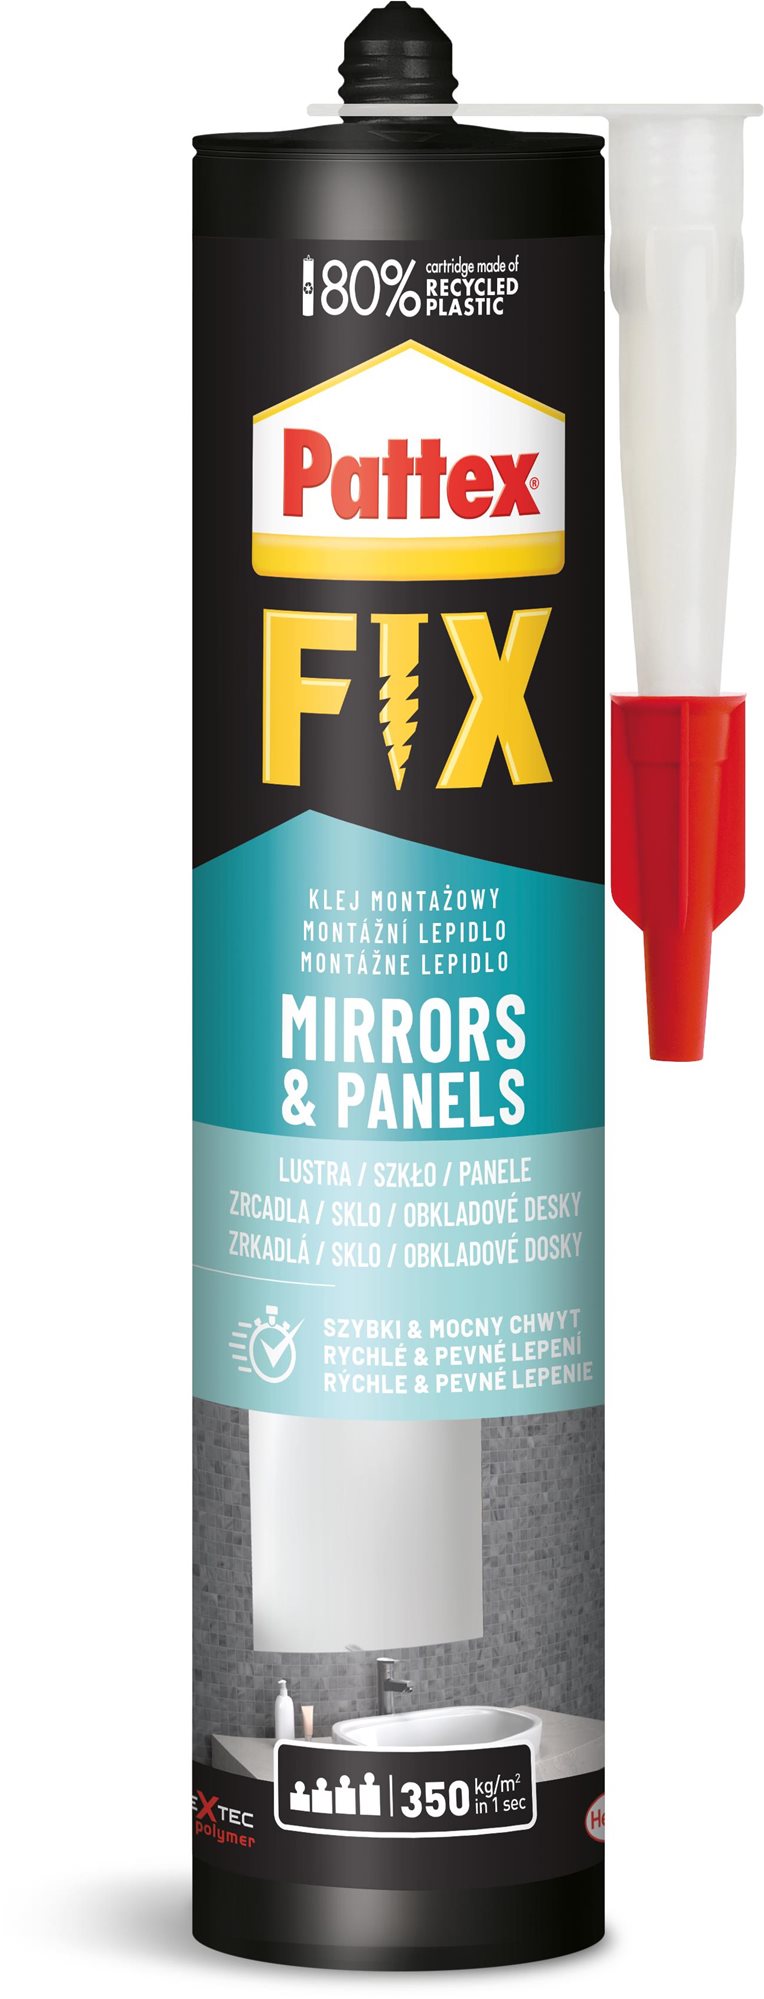 Ragasztó PATTEX FIX Mirrors & Panels (tükrök & panelek) 440 g